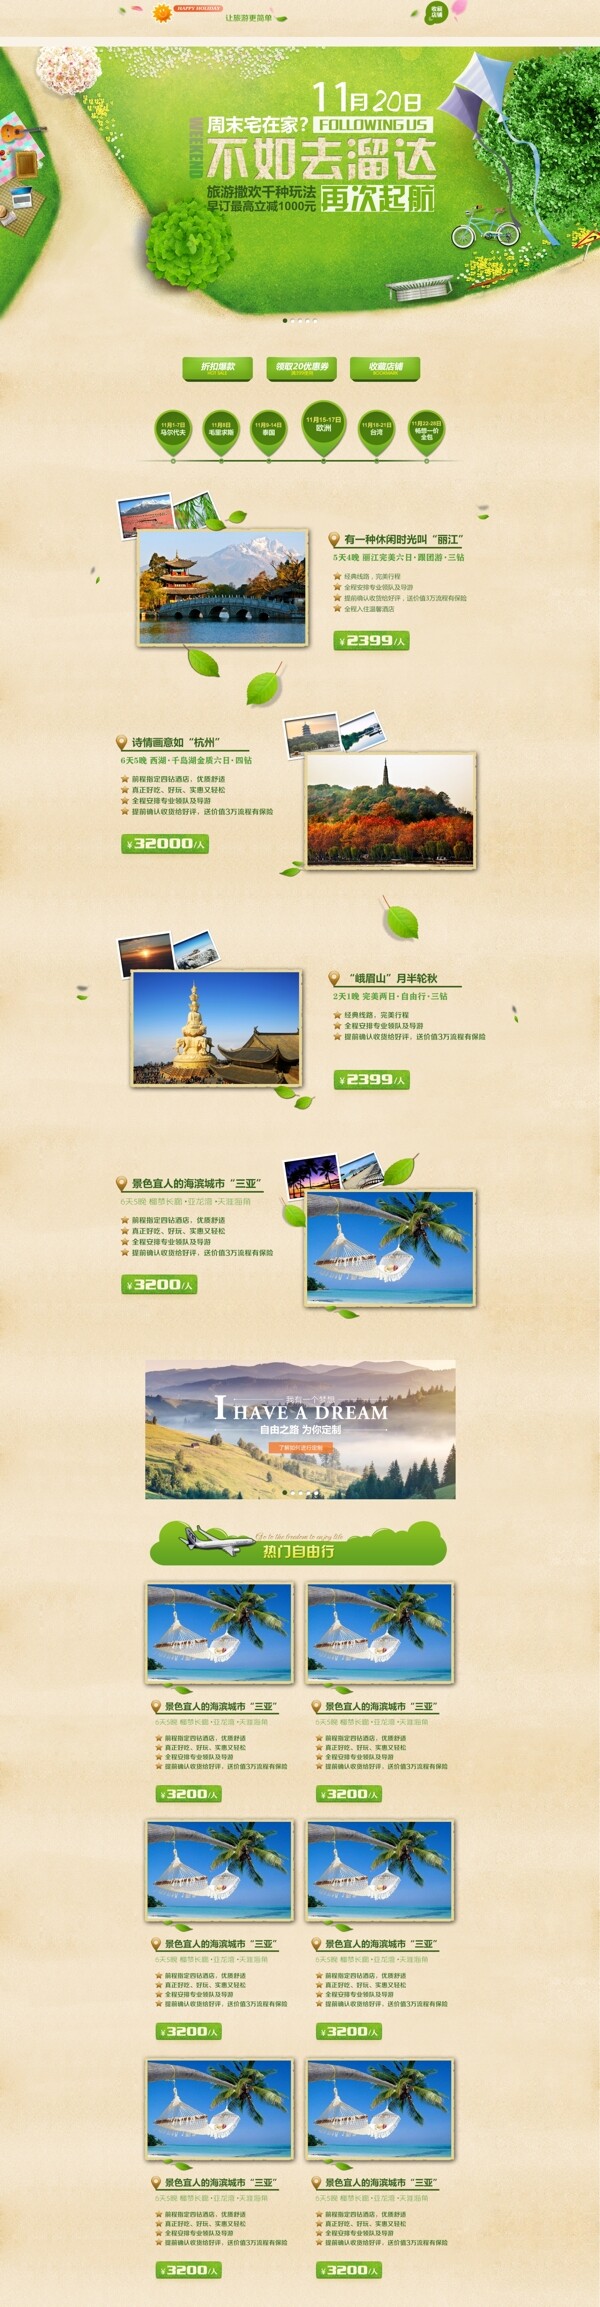 旅游首页海报模板PSD分层设计